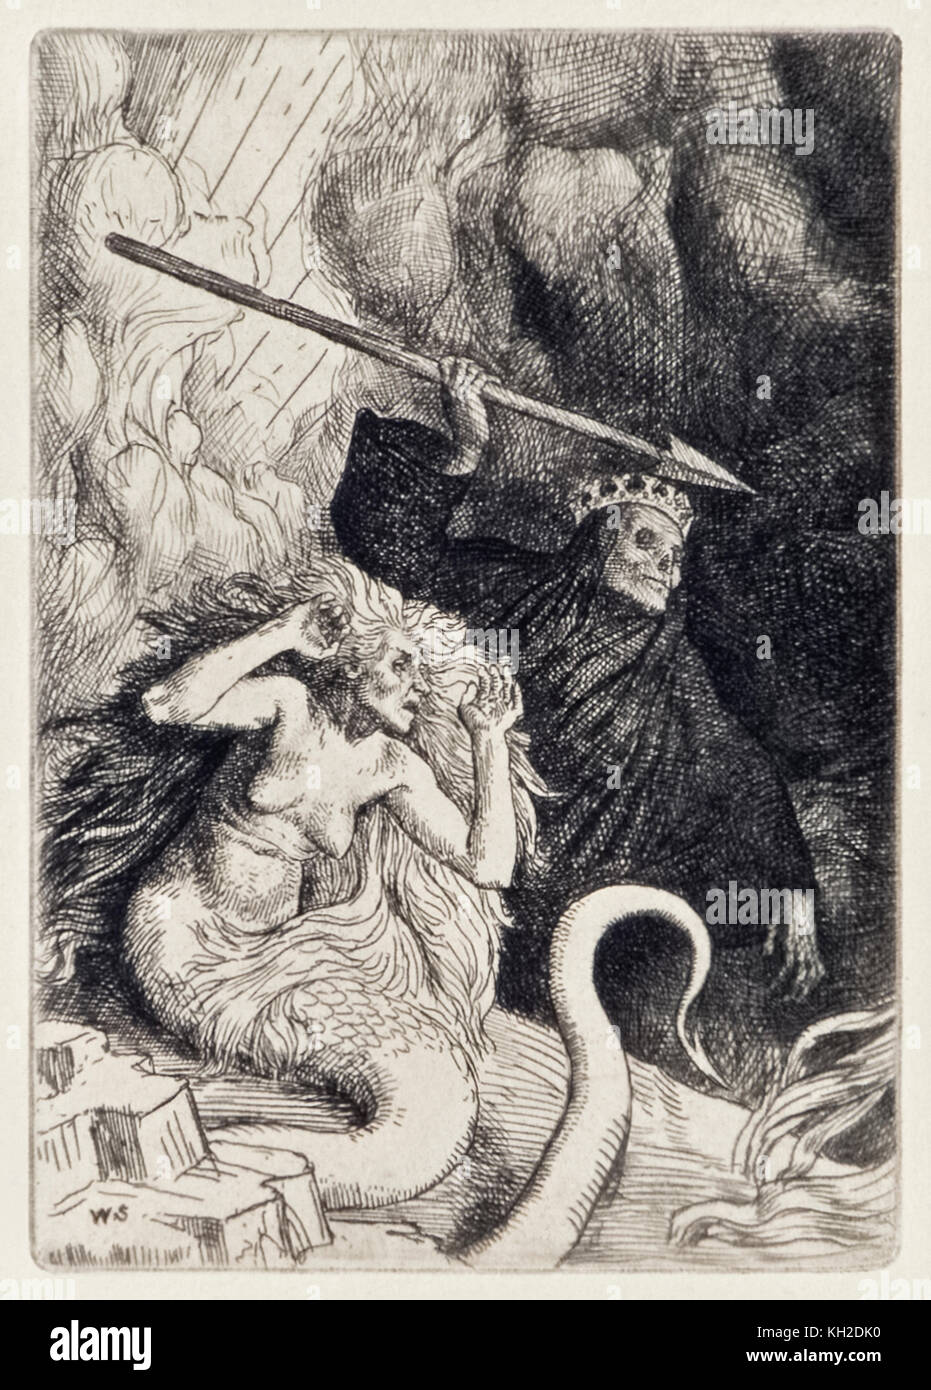 In und des Todes an die Pforten der Hölle" von "Paradise Lost" von John Milton (1608-1674) eine Reihe von 12 Abbildungen geätzt von William Strang (1859-1921). Sünde und Tod kommen auf die Erde. Weitere Informationen finden Sie unten. Stockfoto